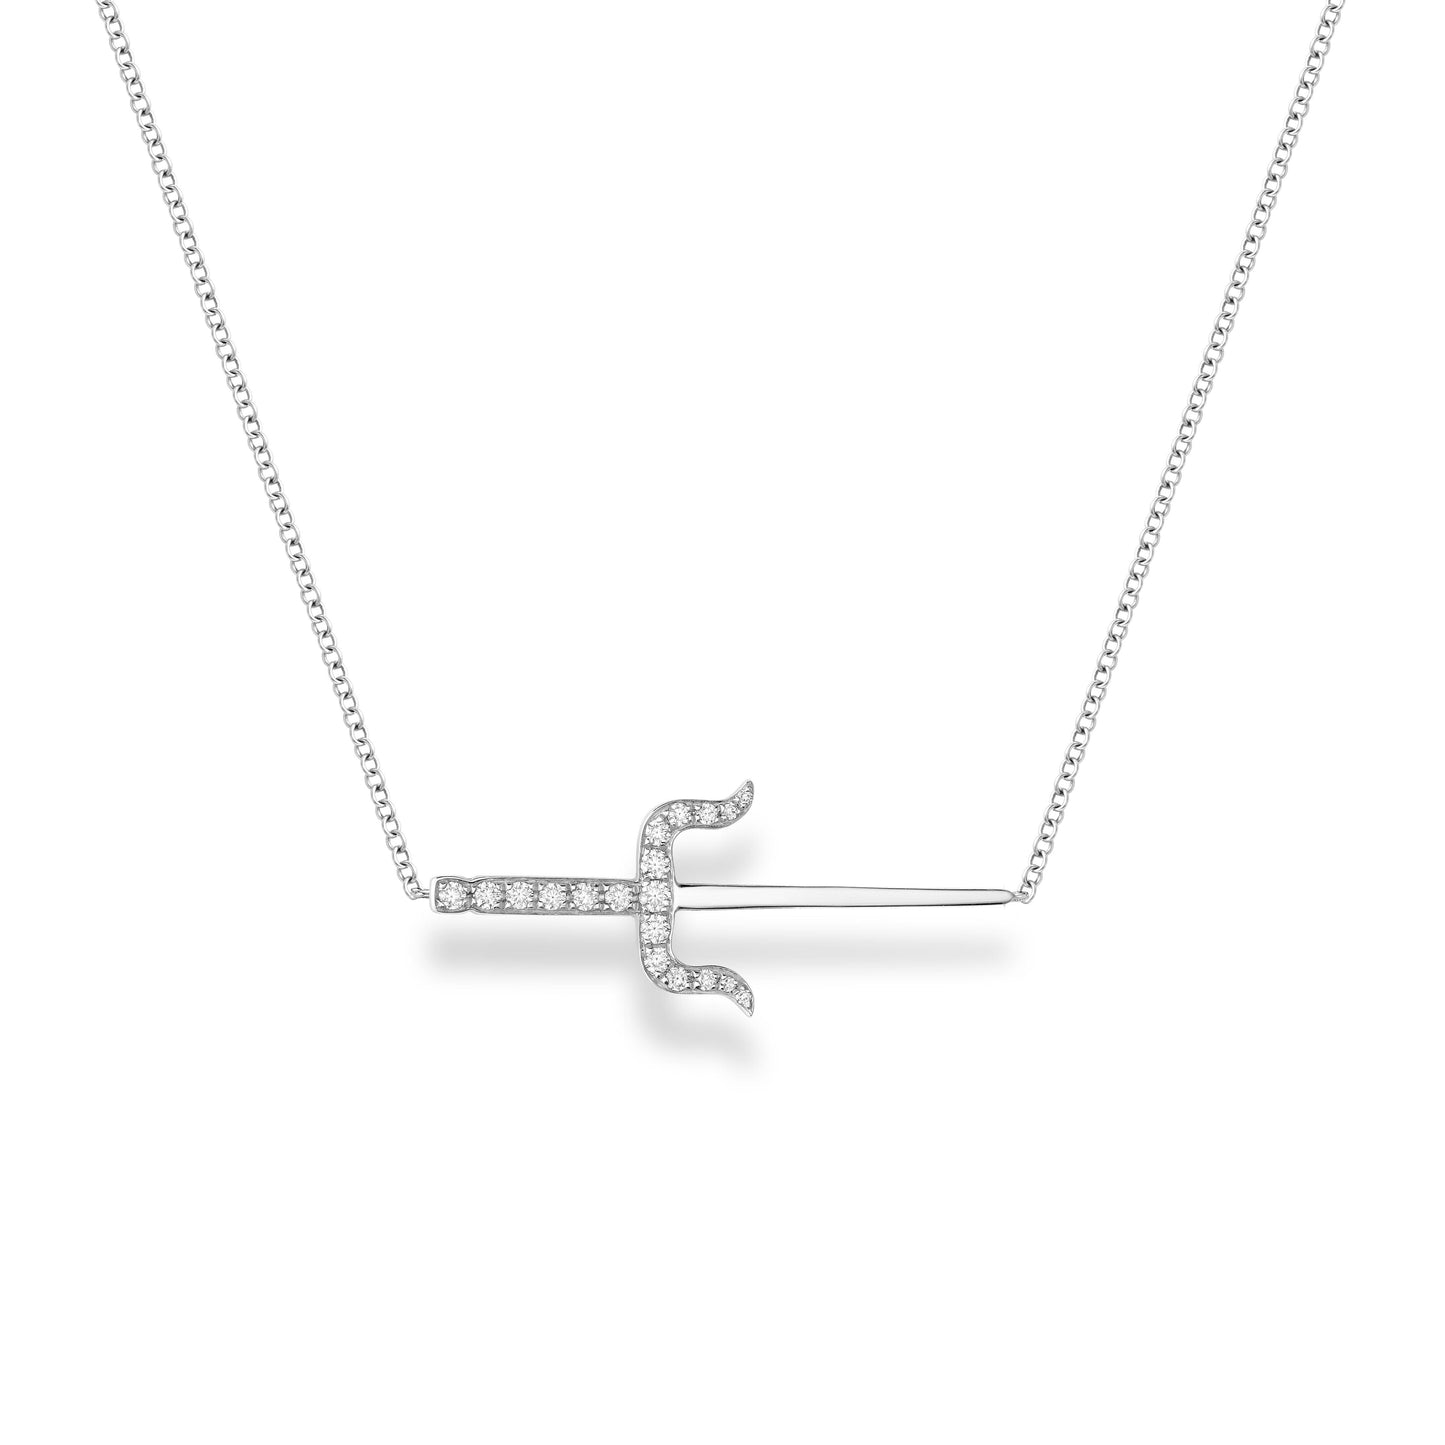 Sevdalie dagger pendent necklace, pave diamond solid 14k white gold